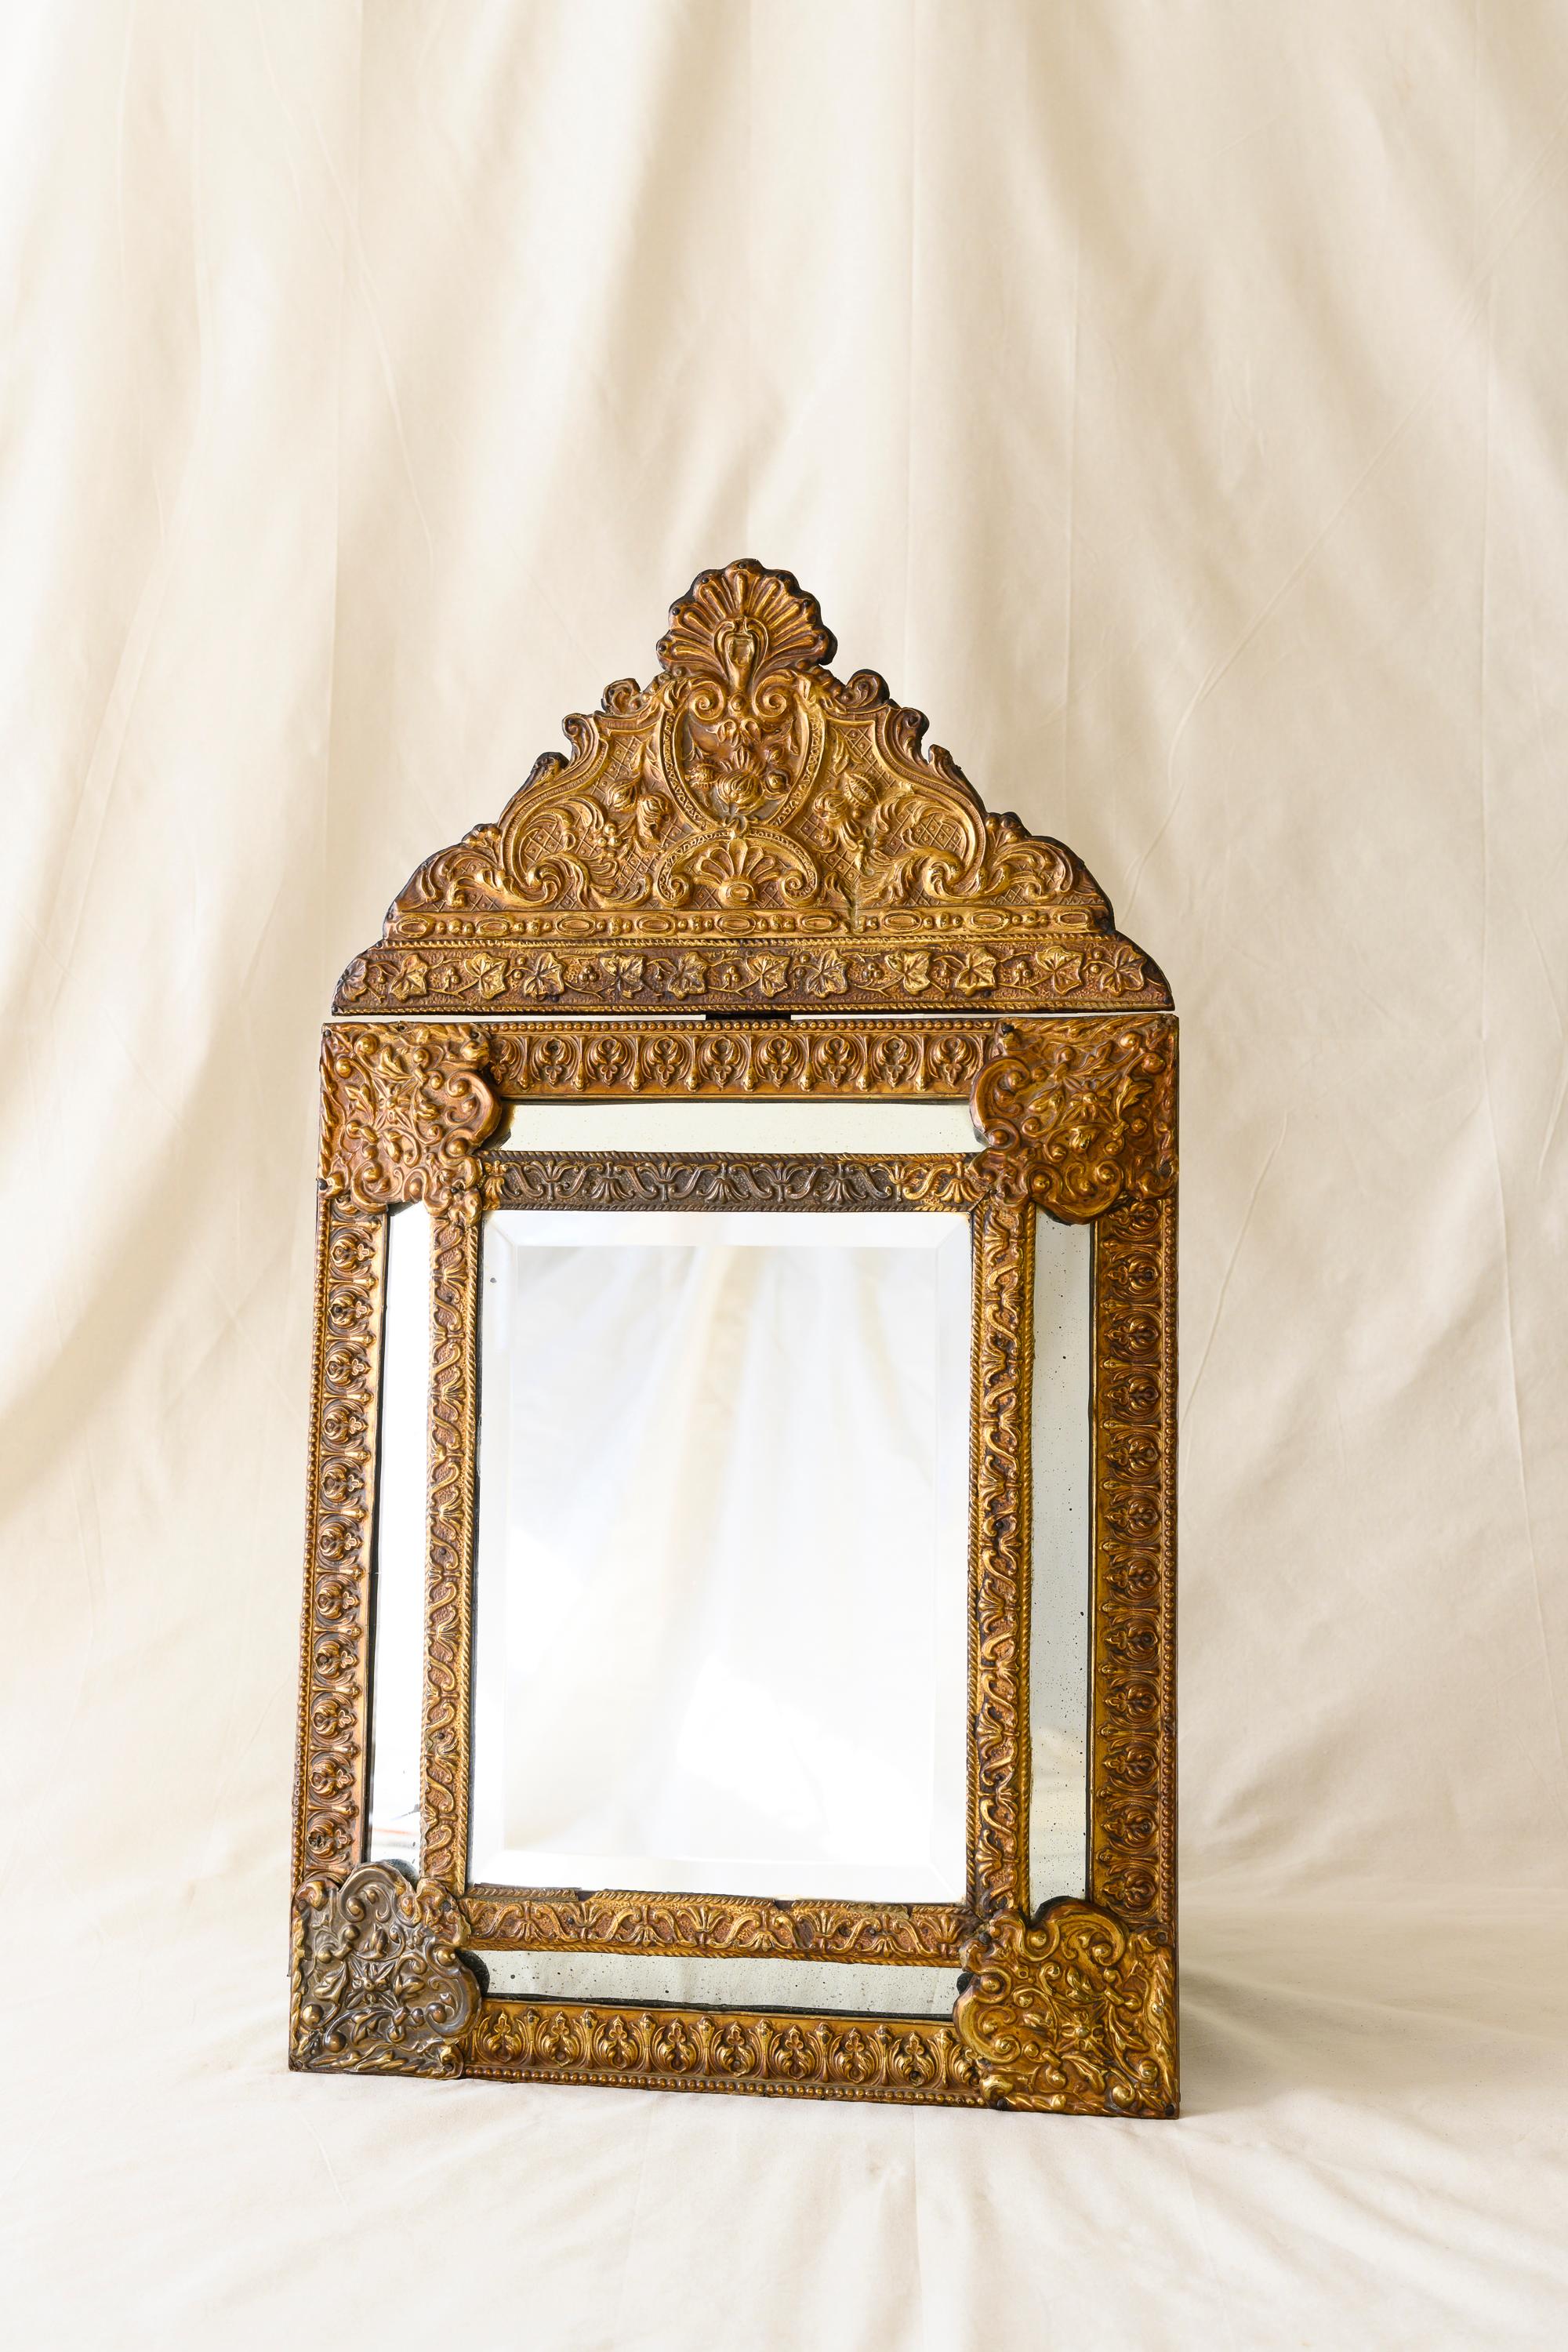 Miroir de style Louis XIII en cuivre doré et bois, présentant une plaque rectangulaire surélevée en verre au mercure dans un cadre complexe de feuillage et de volutes avec des bordures en miroir, surmonté d'une crête amovible de feuillage en volutes